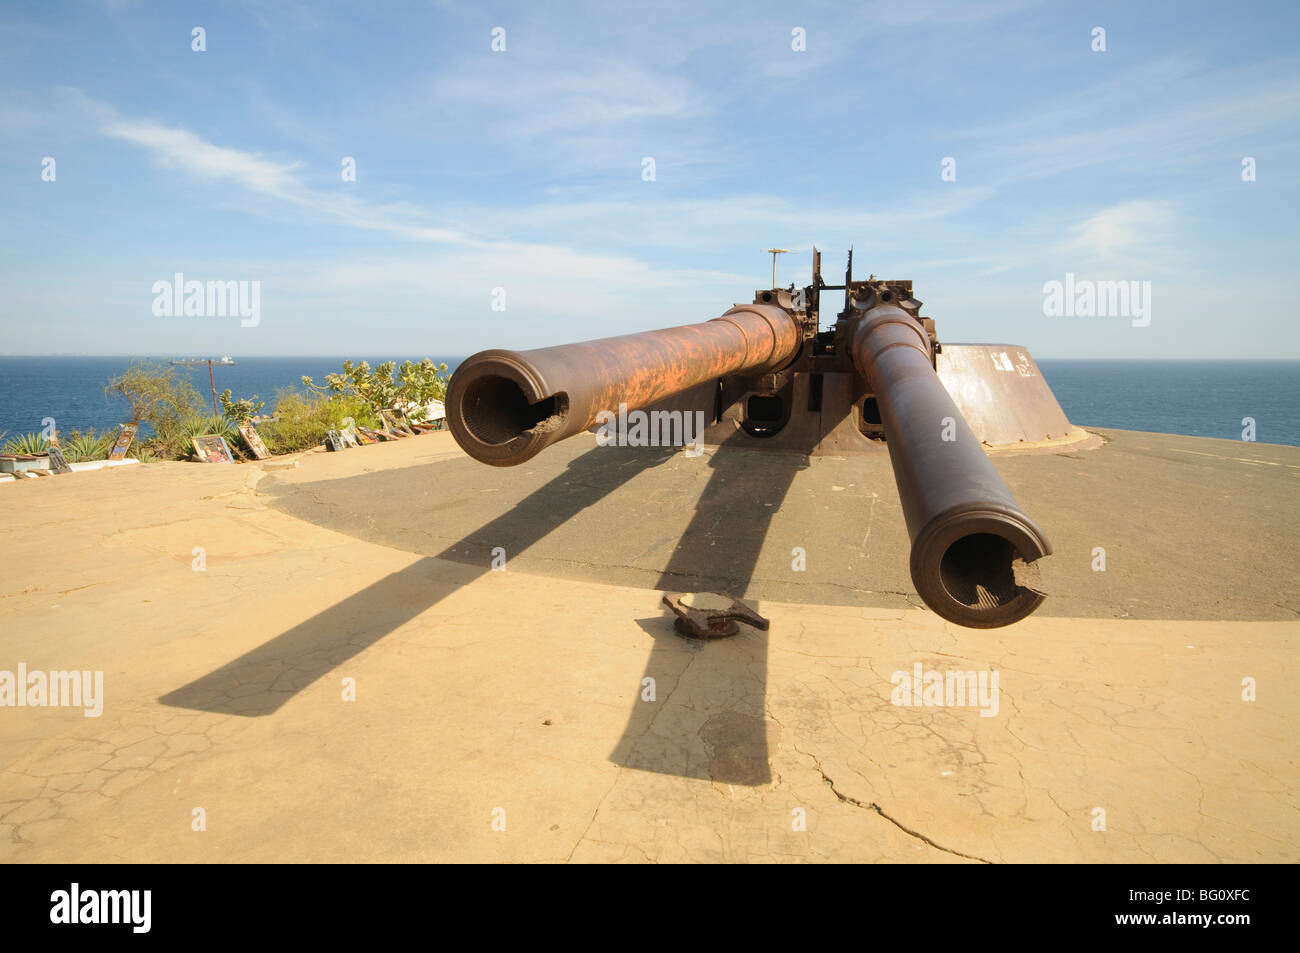 Armes à feu, l'île de Gorée célèbre pour son rôle dans l'esclavage, près de Dakar, Sénégal, Afrique de l'Ouest, l'Afrique Banque D'Images